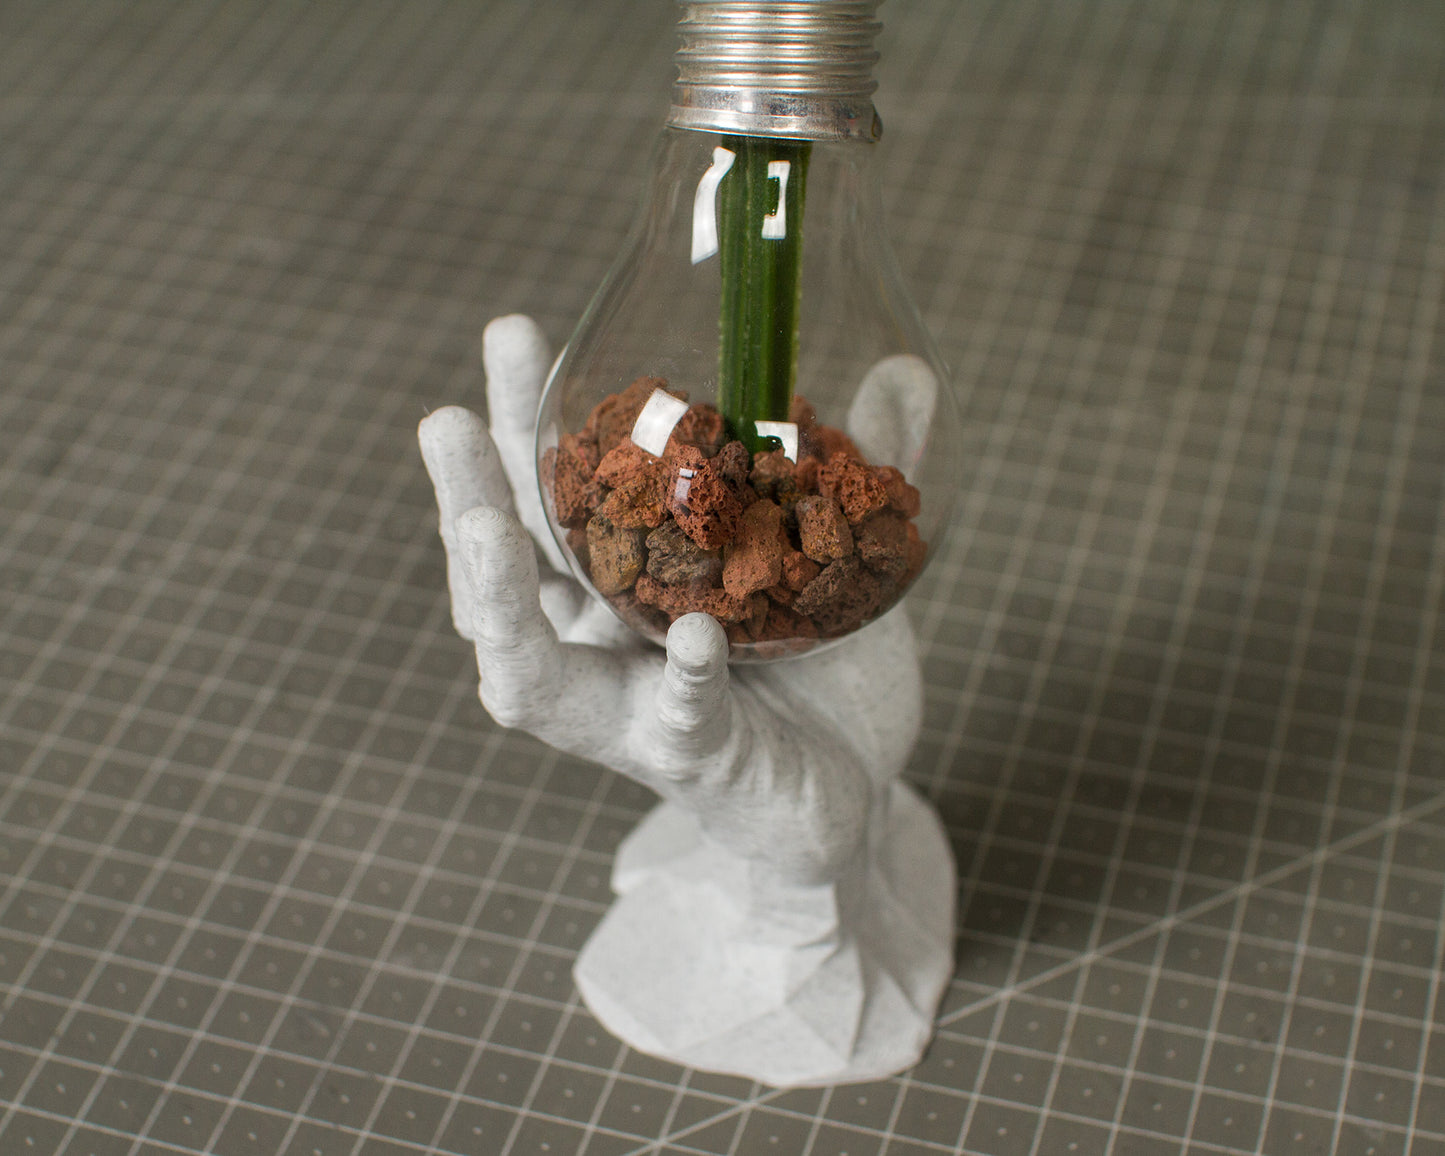 3D printed lightbulb holder